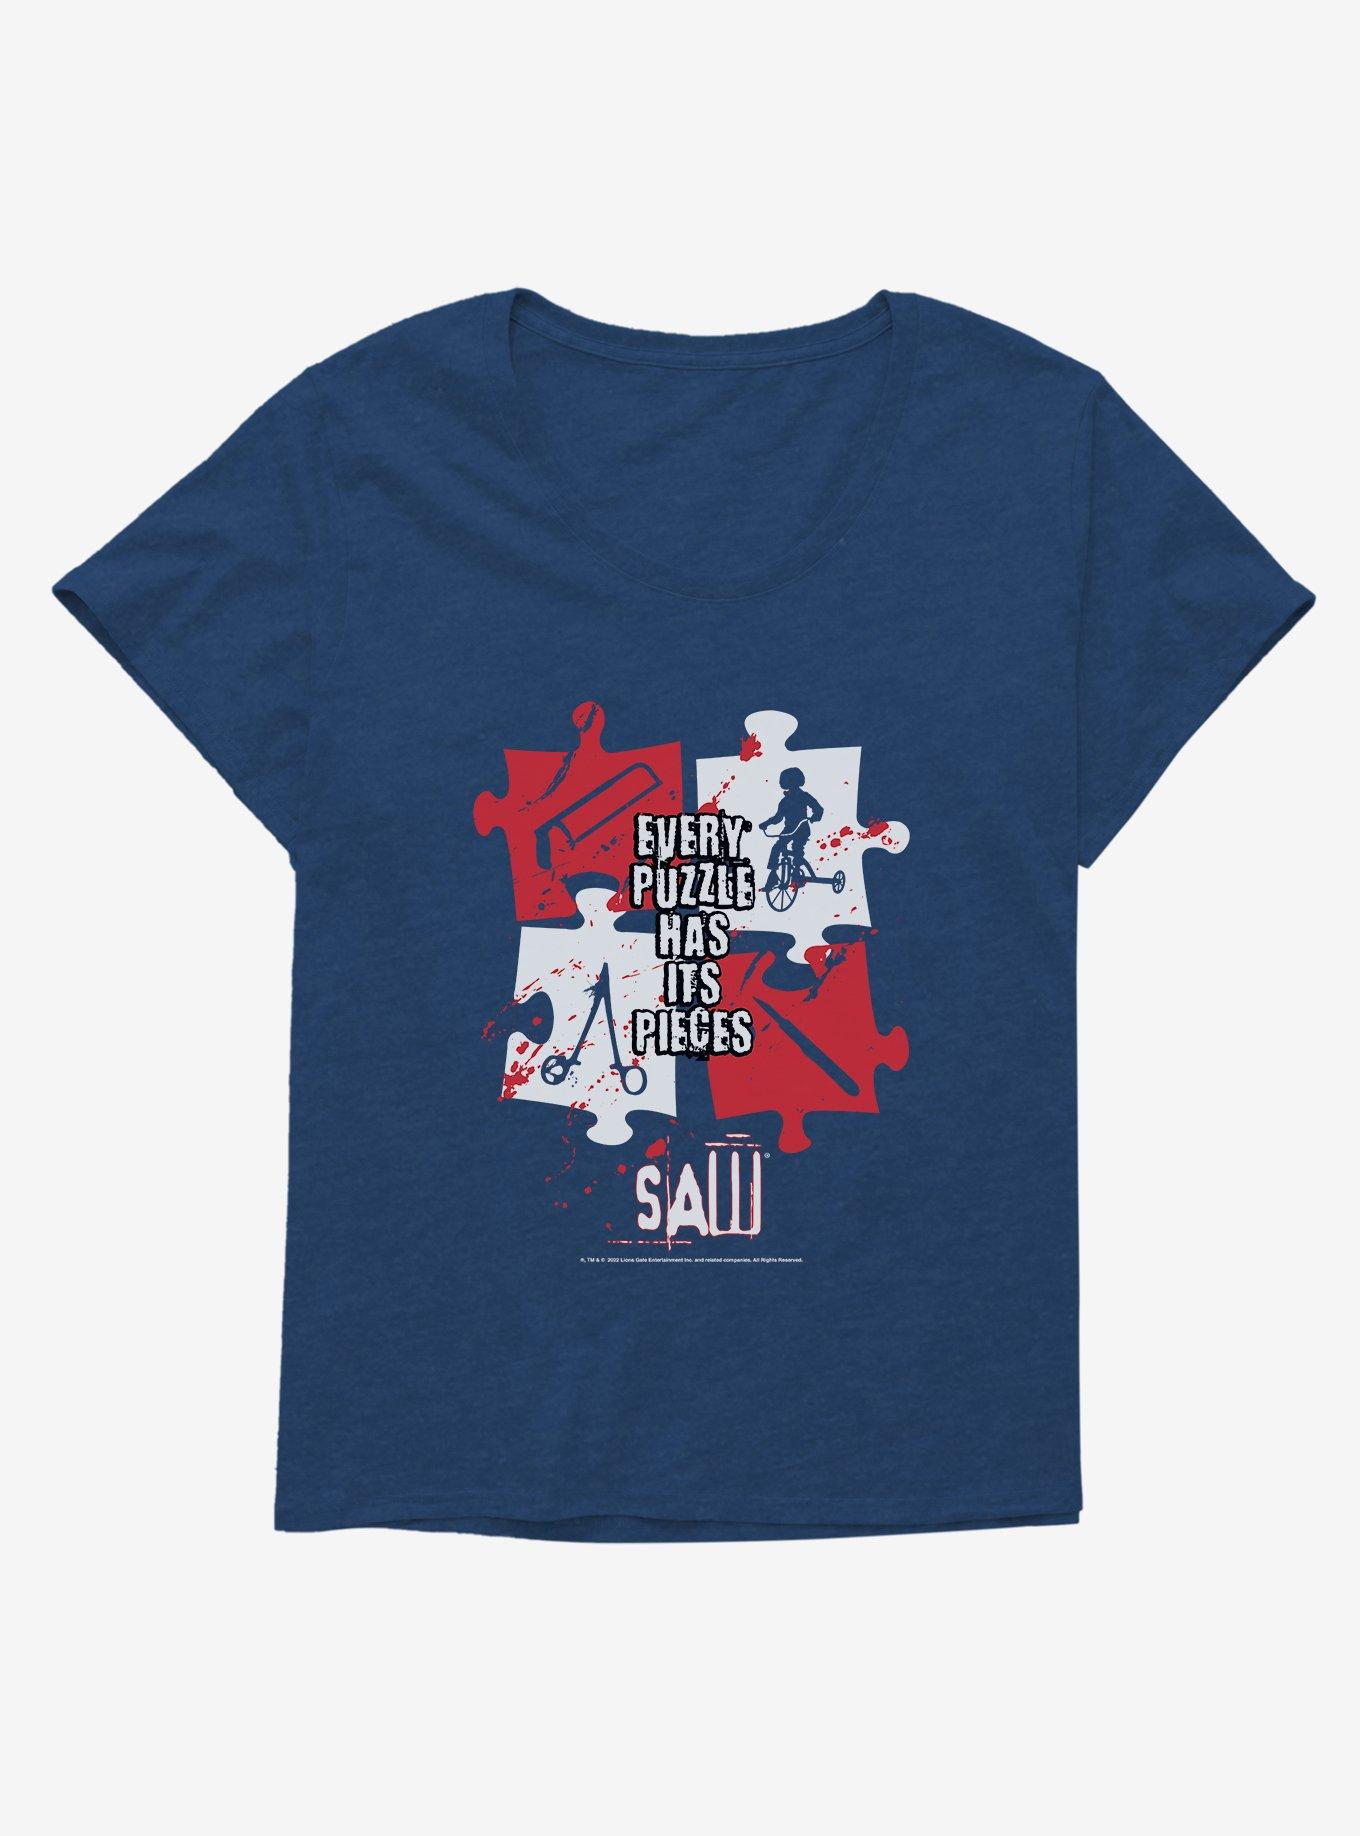 Saw Puzzle Pieces Girls T-Shirt Plus